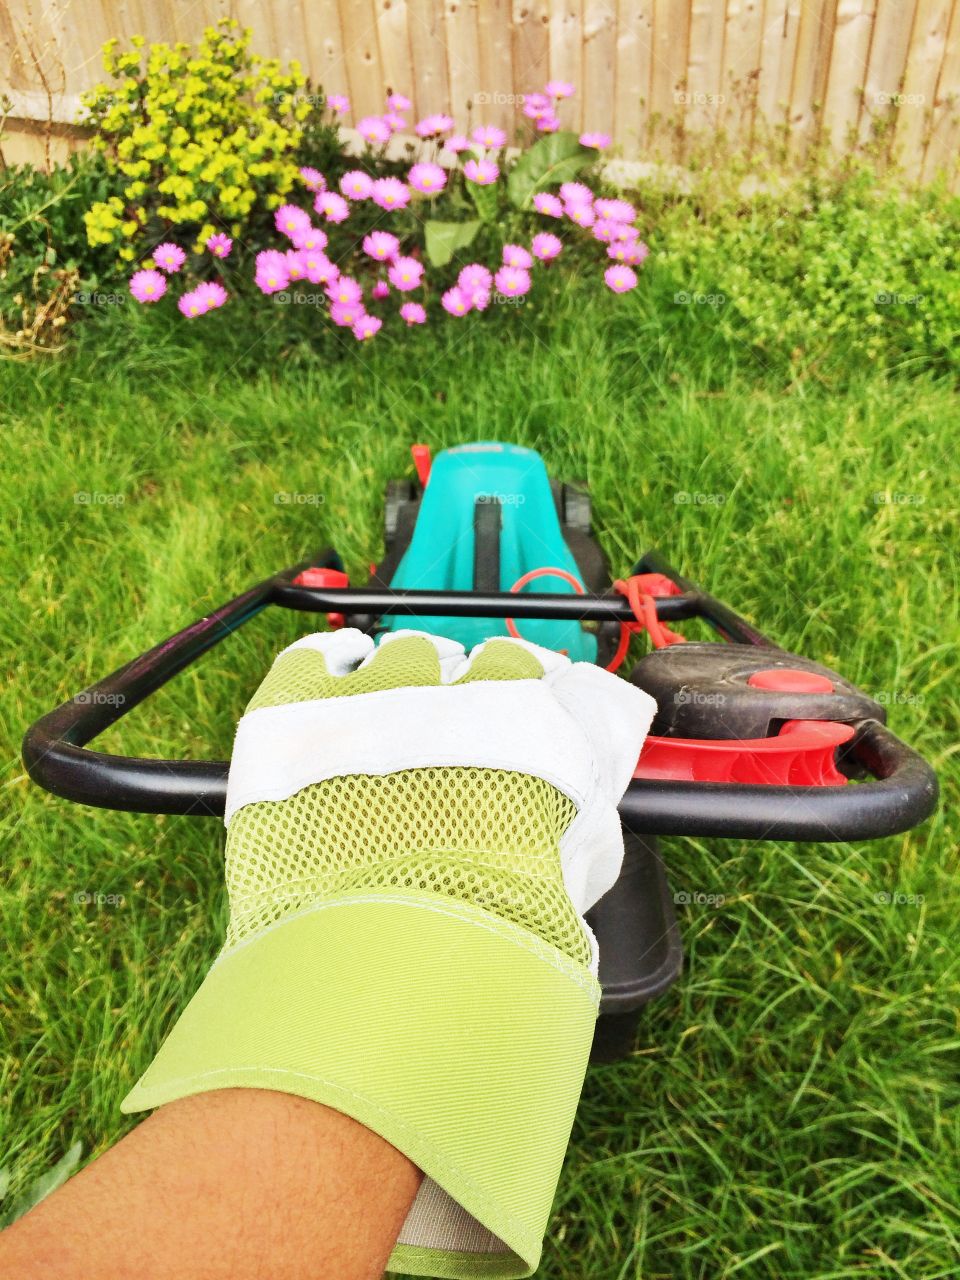 Hand holding a lawn mower. Hand holding a lawn mower in a garden